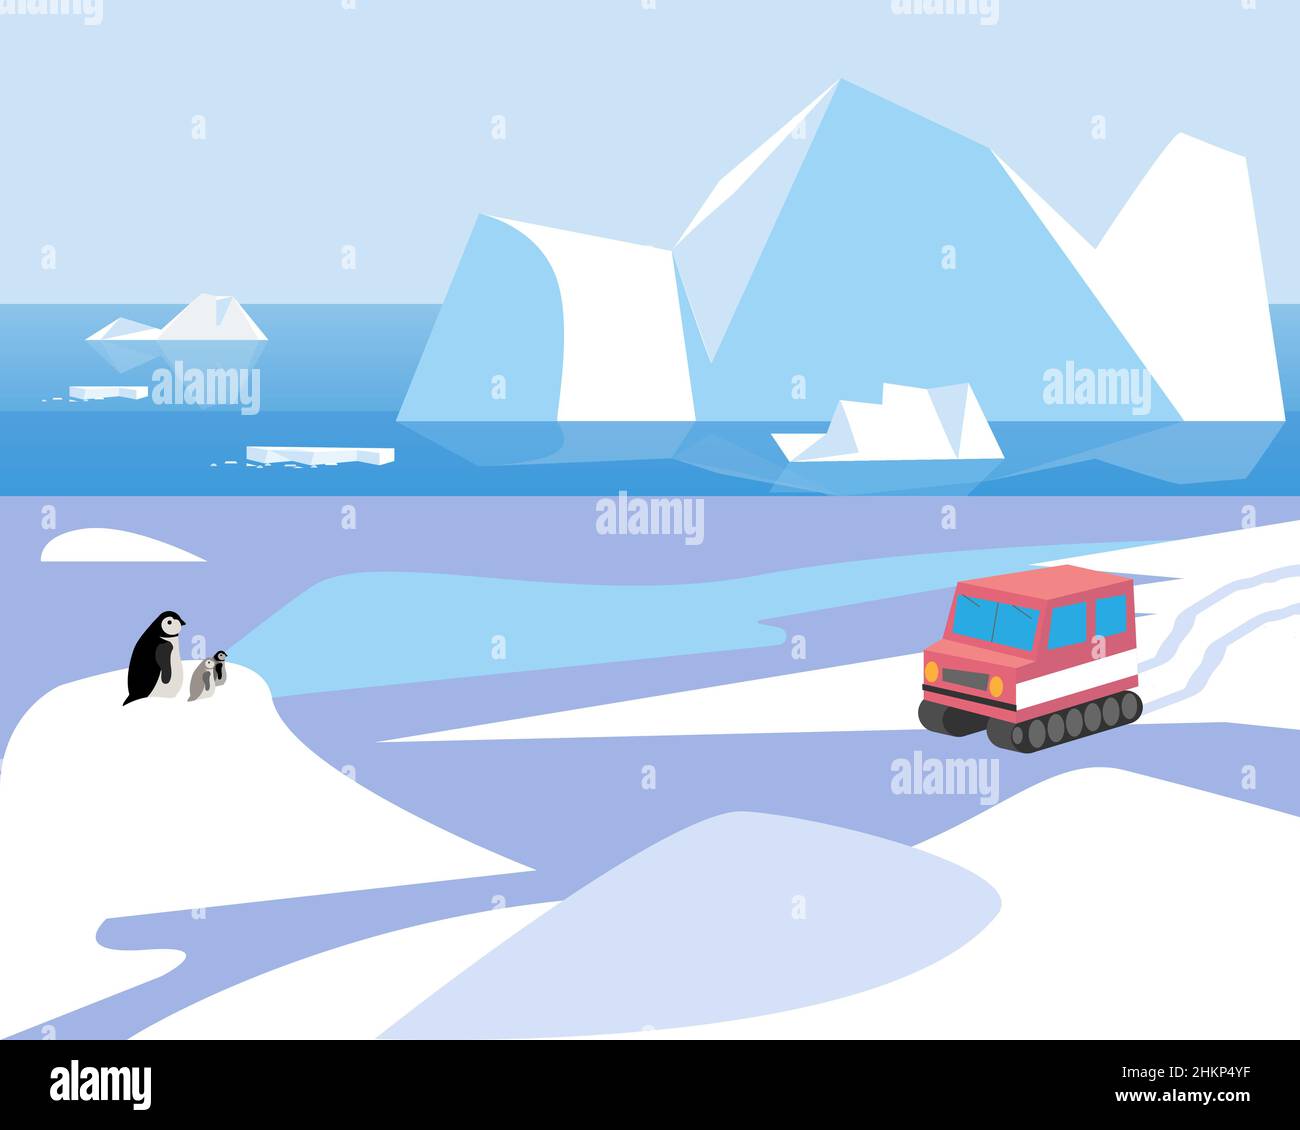 Paysage de l'Antarctique avec les glaciers, une famille de pingouins envisage une motoneige, illustration vectorielle.Paysage du pôle Sud Illustration de Vecteur